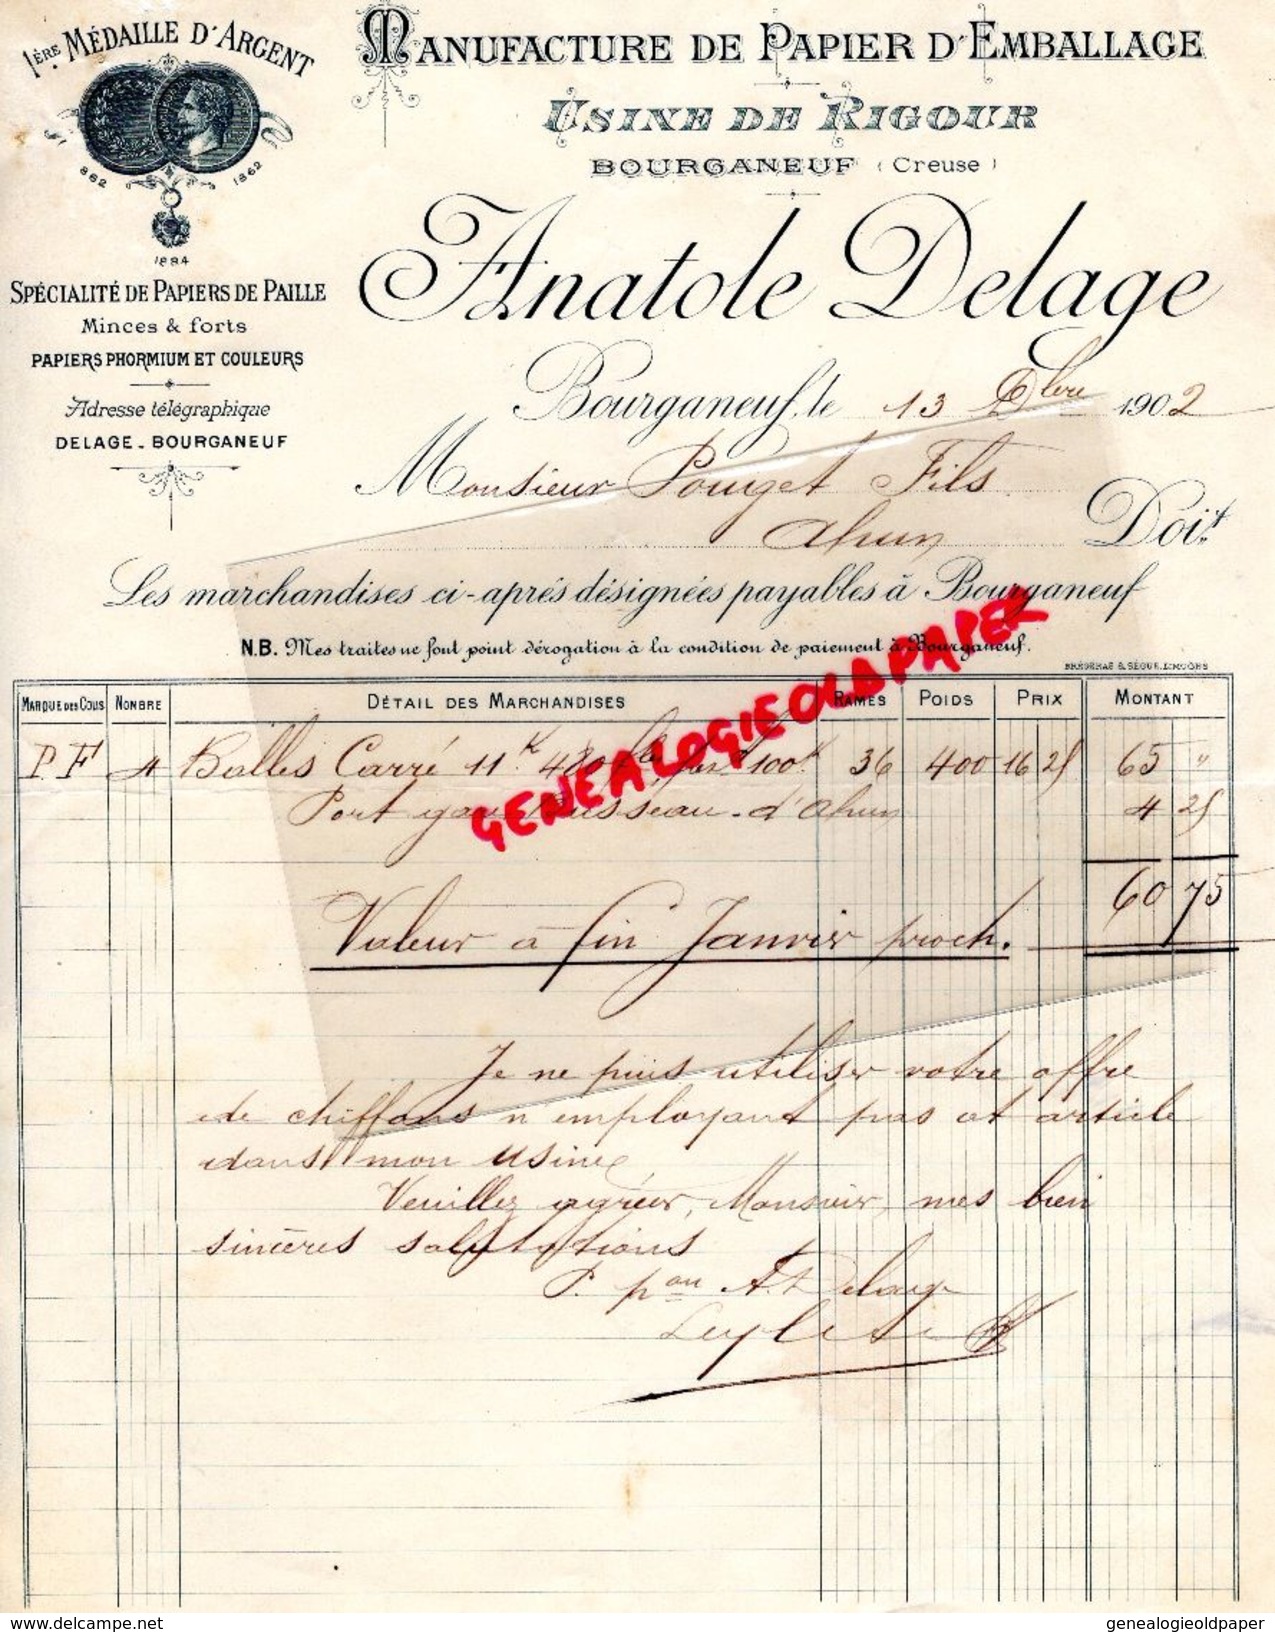 23 -BOURGANEUF - FACTURE USINE DE RIGOUR- MANUFACTURE PAPIER EMBALLAGE- ANATOLE DELAGE -PAPIERS PAILLE- PAPETERIE- 1902 - Petits Métiers